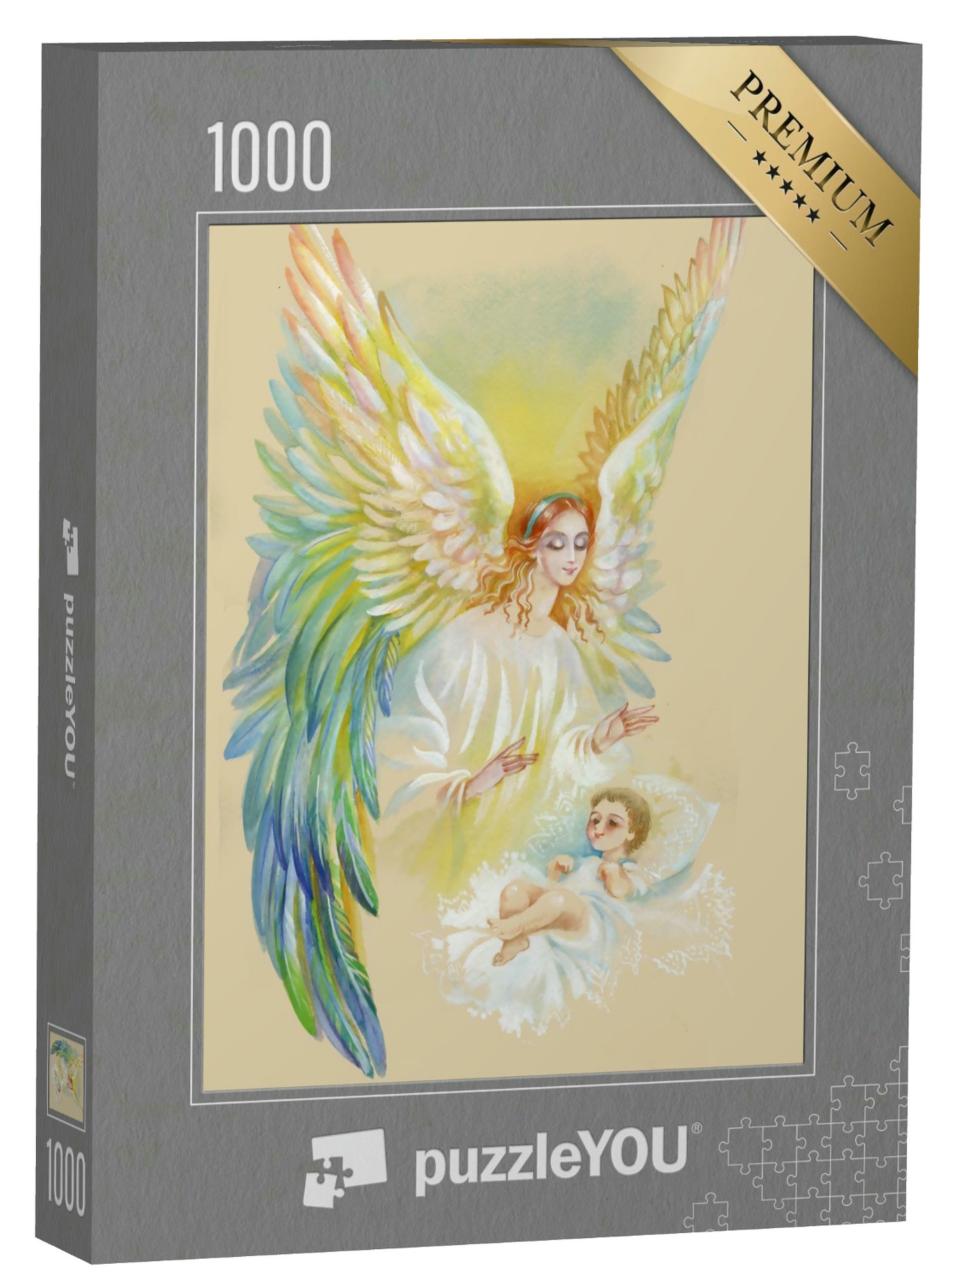 Puzzle 1000 Teile „Engel mit Flügeln fliegt über Kind, Aquarell-Illustration“